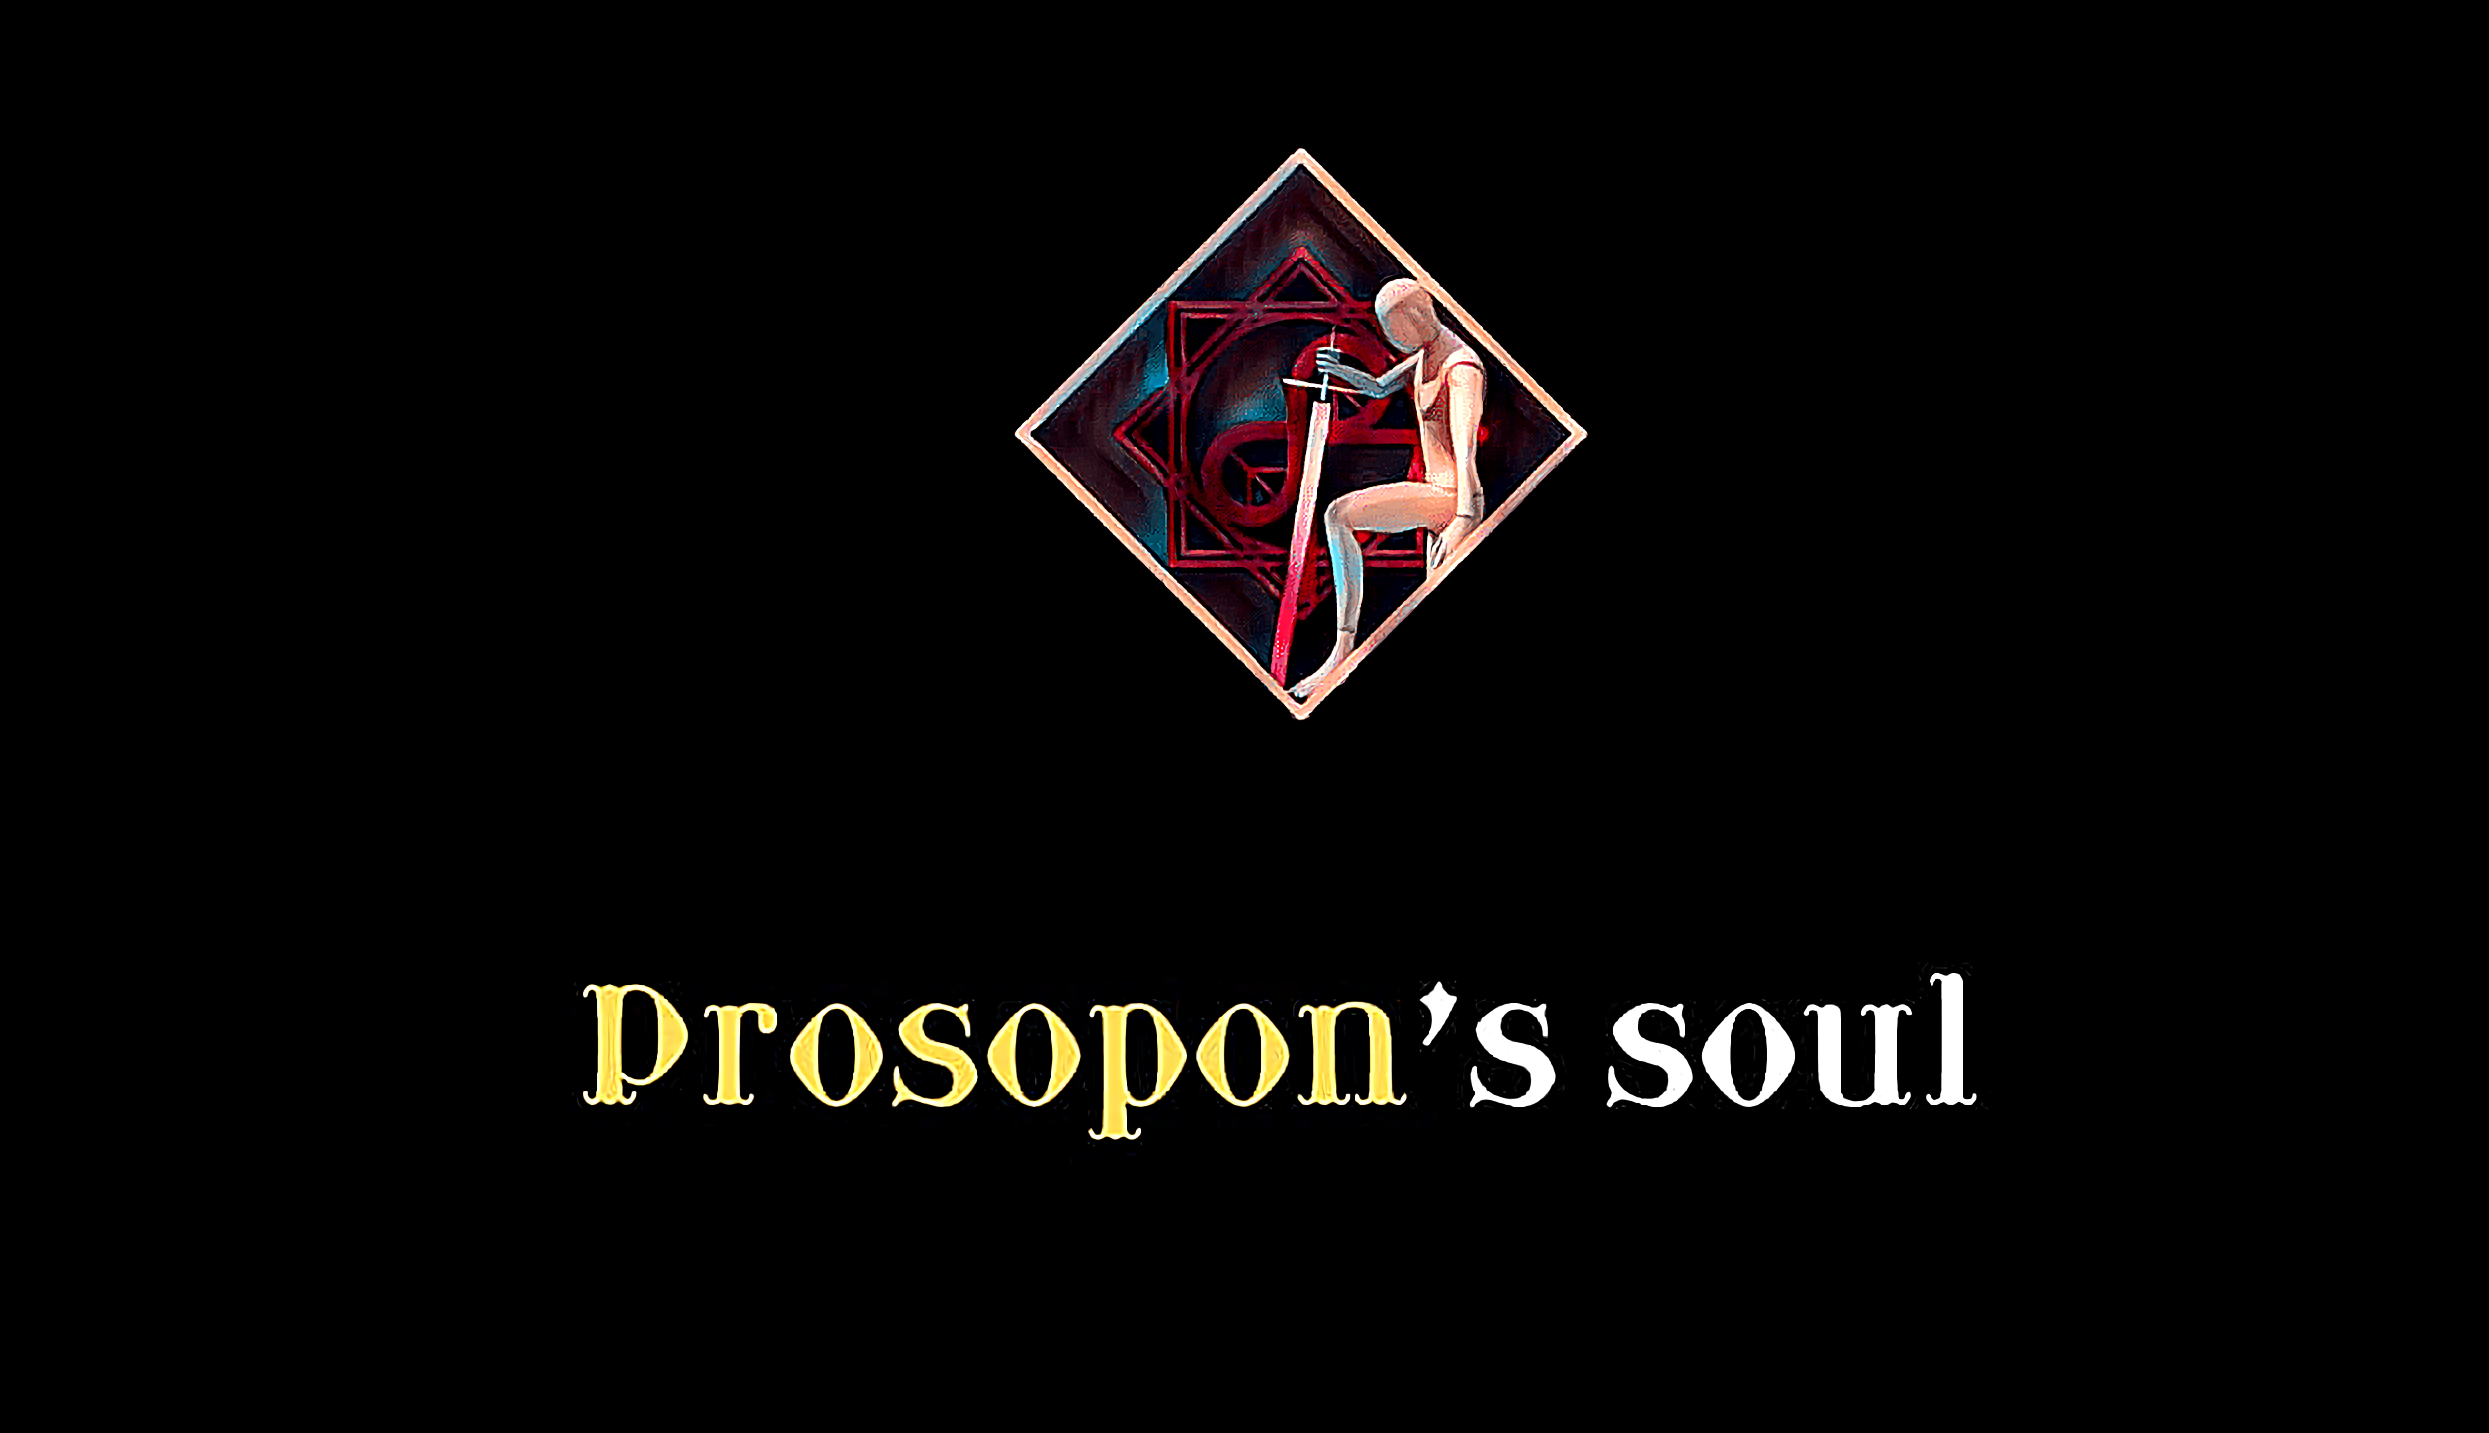 Prosopon's soul | Prologue